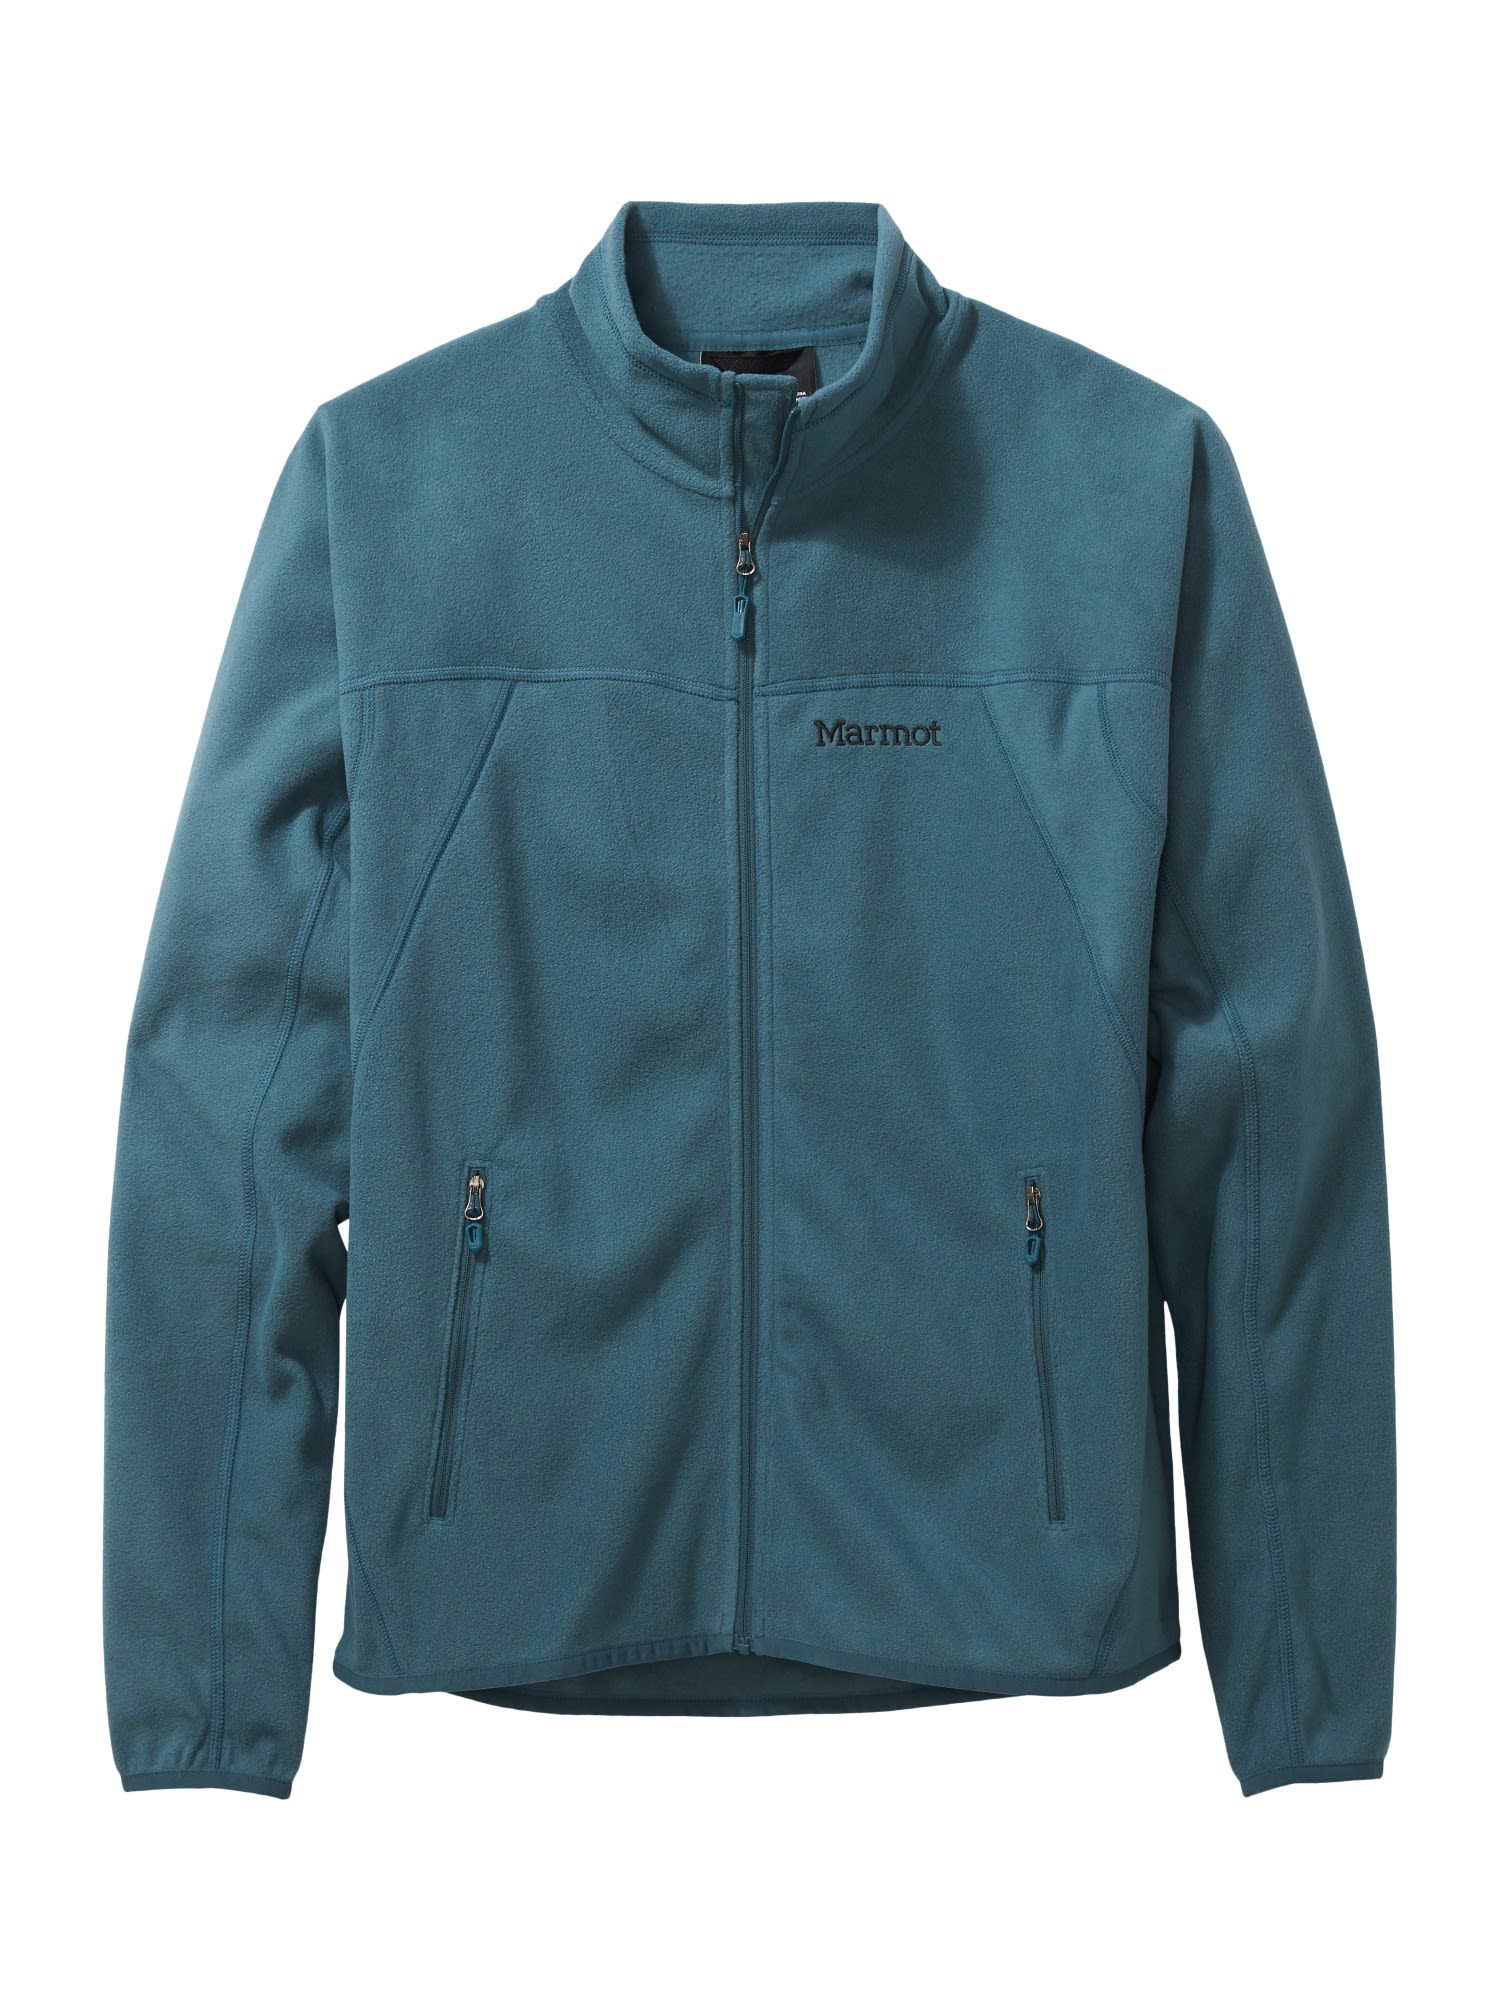 Marmot Pisgah Fleece Jacket Blau- Male Freizeitjacken- Grsse S - Farbe Stargazer